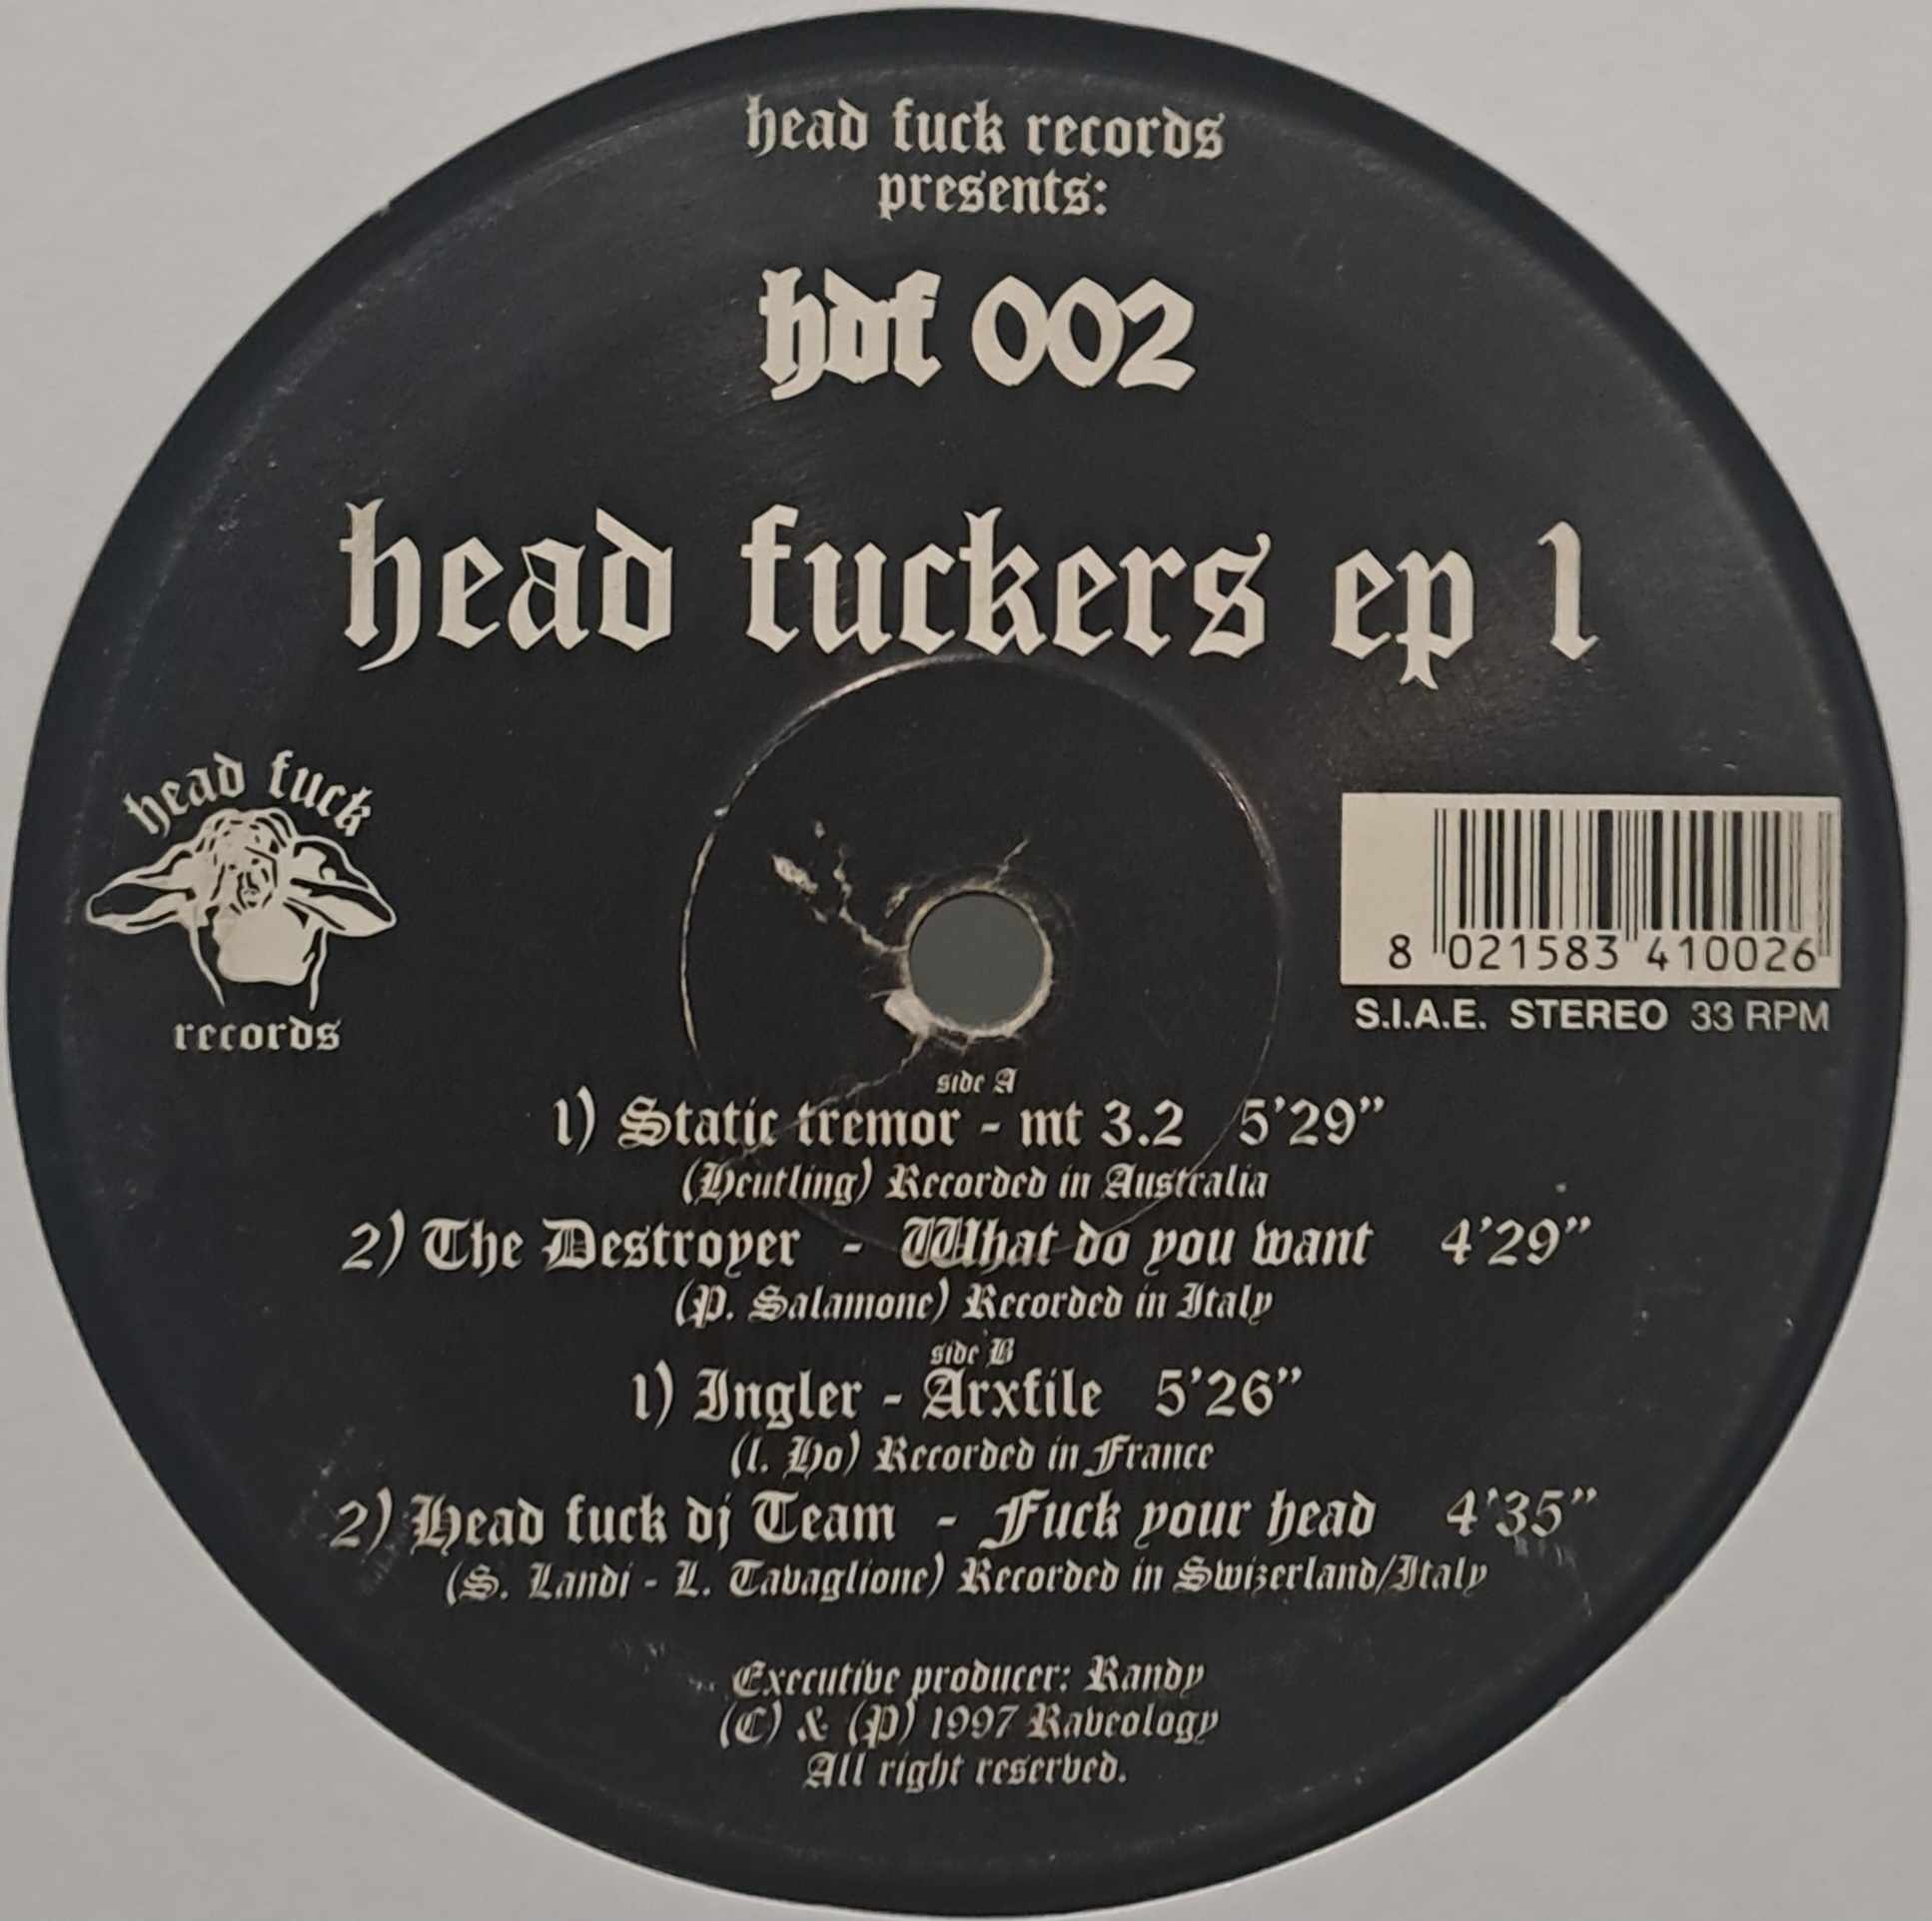 Head Fuck 002 - vinyle hardcore